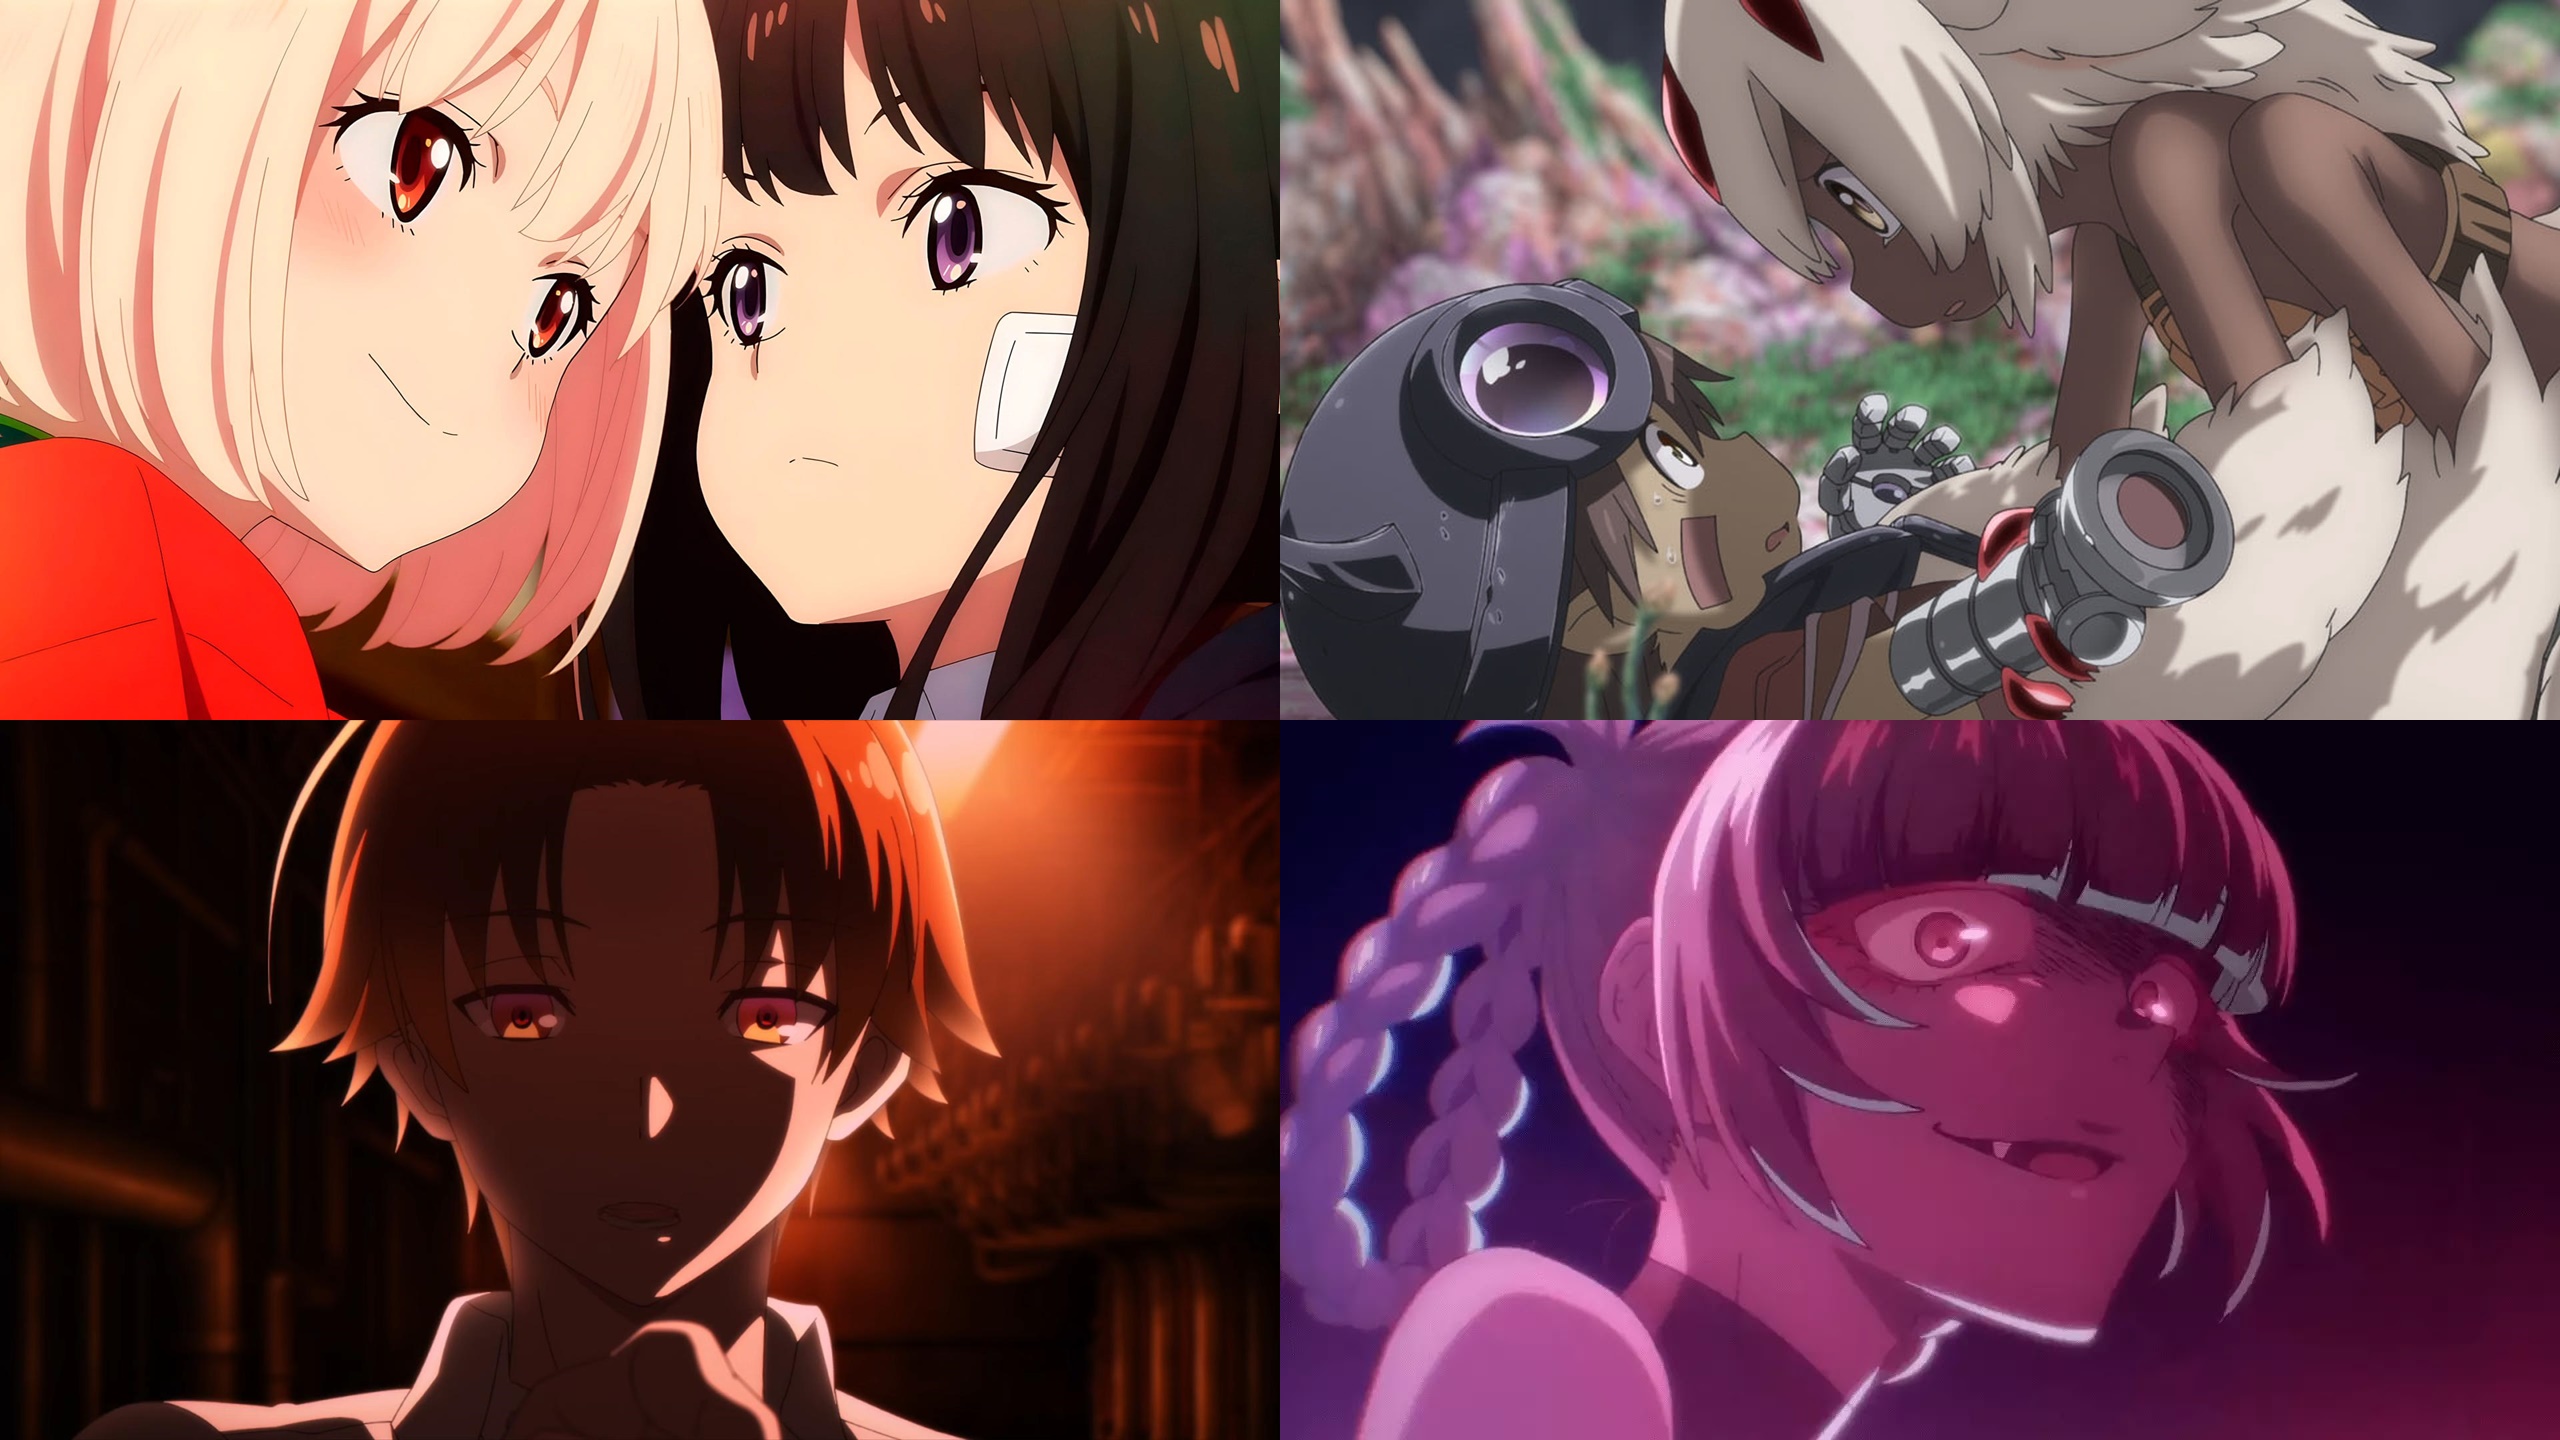 Animes In Japan 🎄 on X: 🏆, Melhor anime da Temporada 🏅